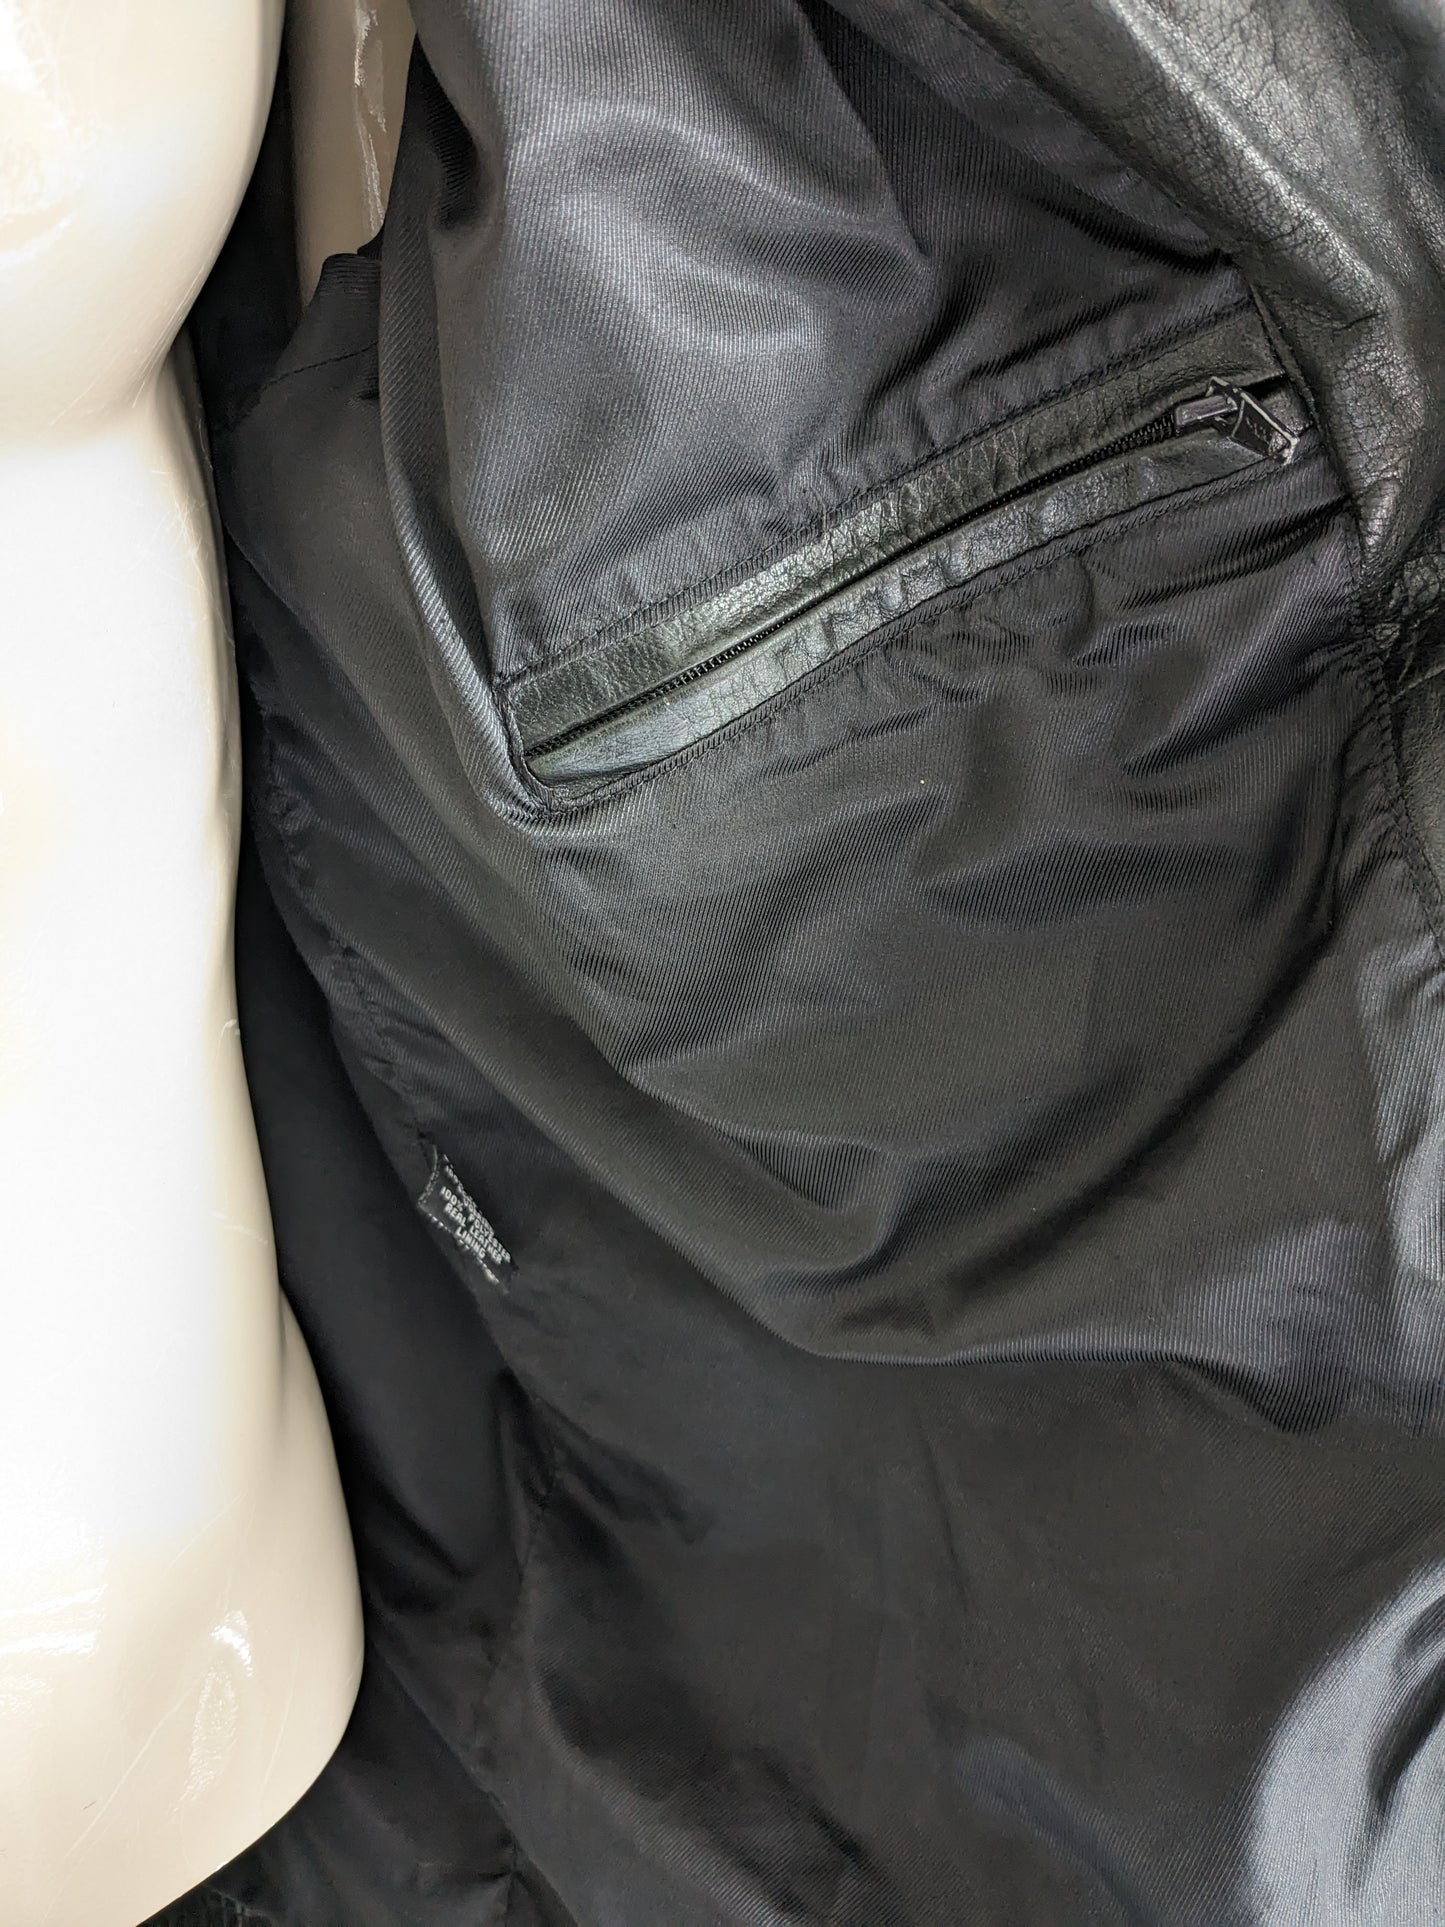 Chaqueta / chaqueta de cuero con botones. Color negro. Tamaño xl.